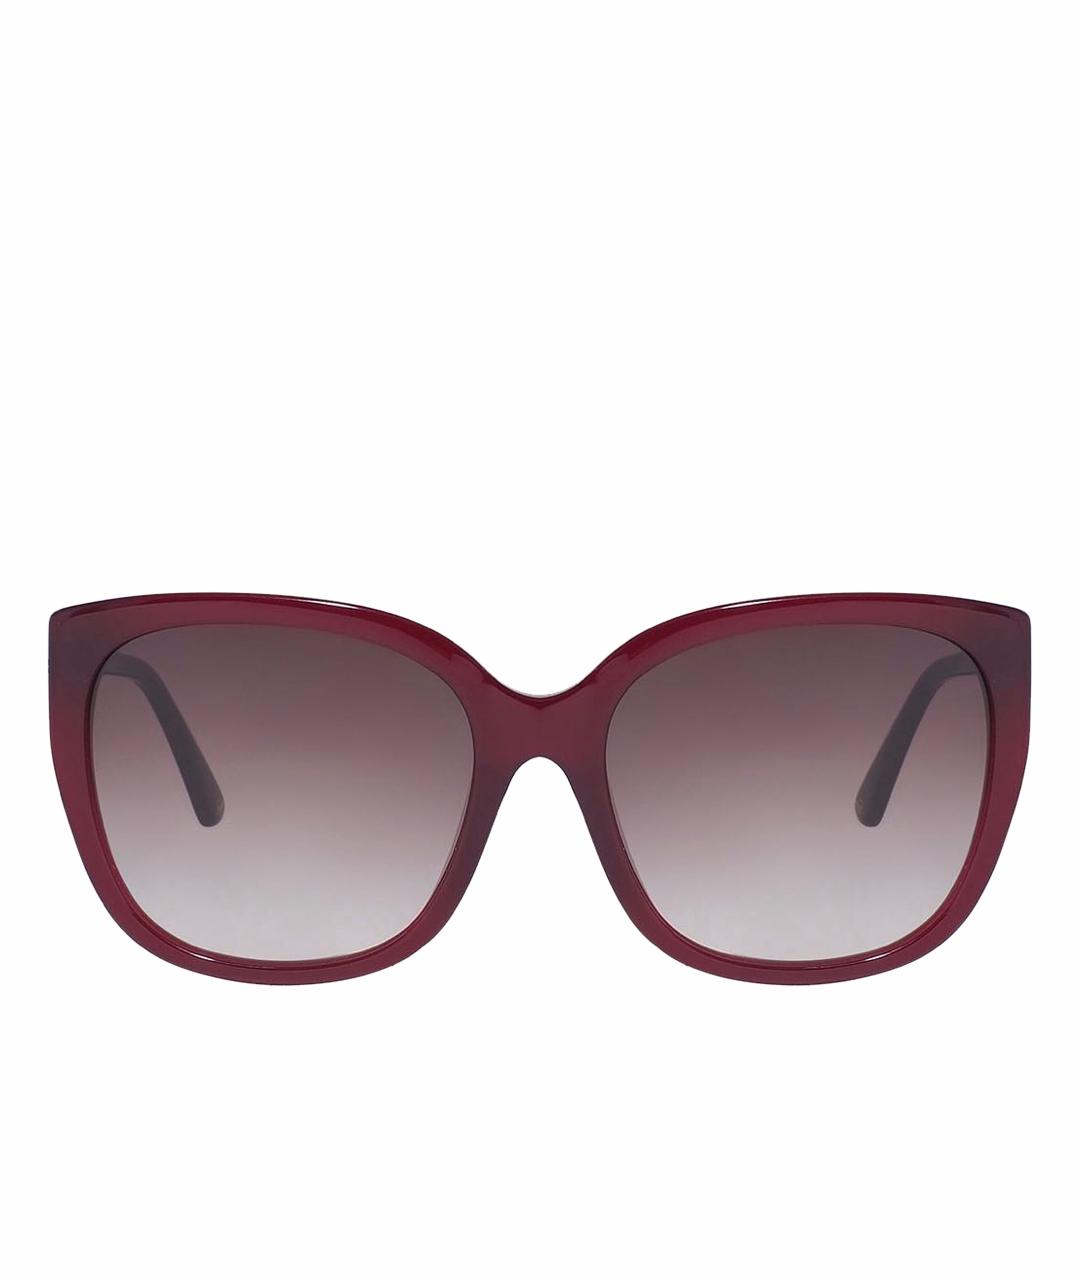 NINA RICCI Бордовые пластиковые солнцезащитные очки, фото 1